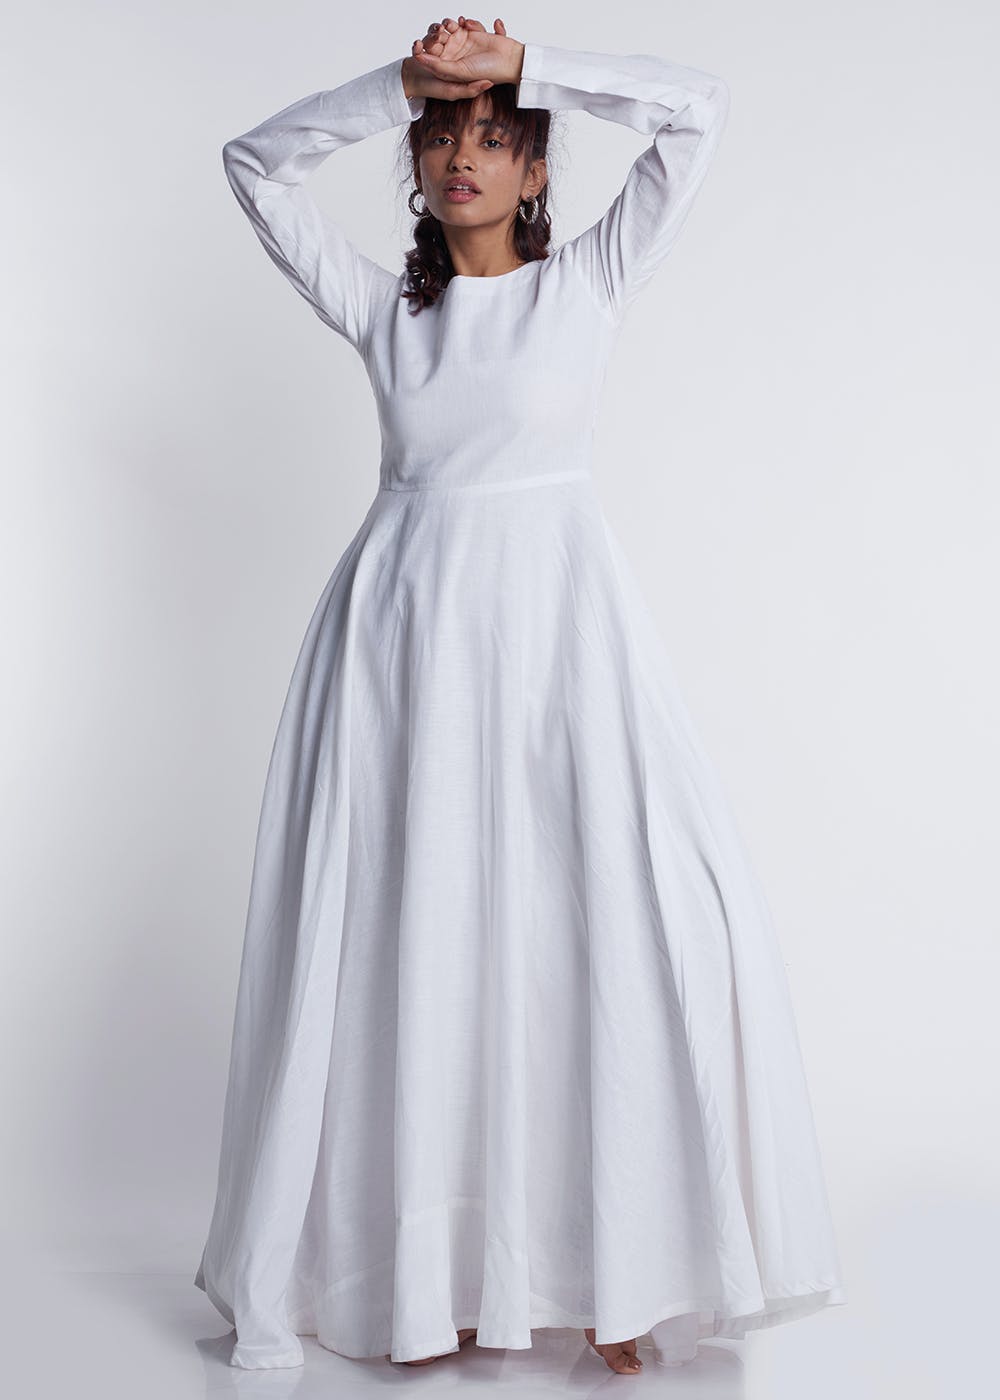 Full A-line 3 Hoop Floor-Length Bridal Dress Gown Slip Petticoat Off-White/1003-3E  – Fabrichittite